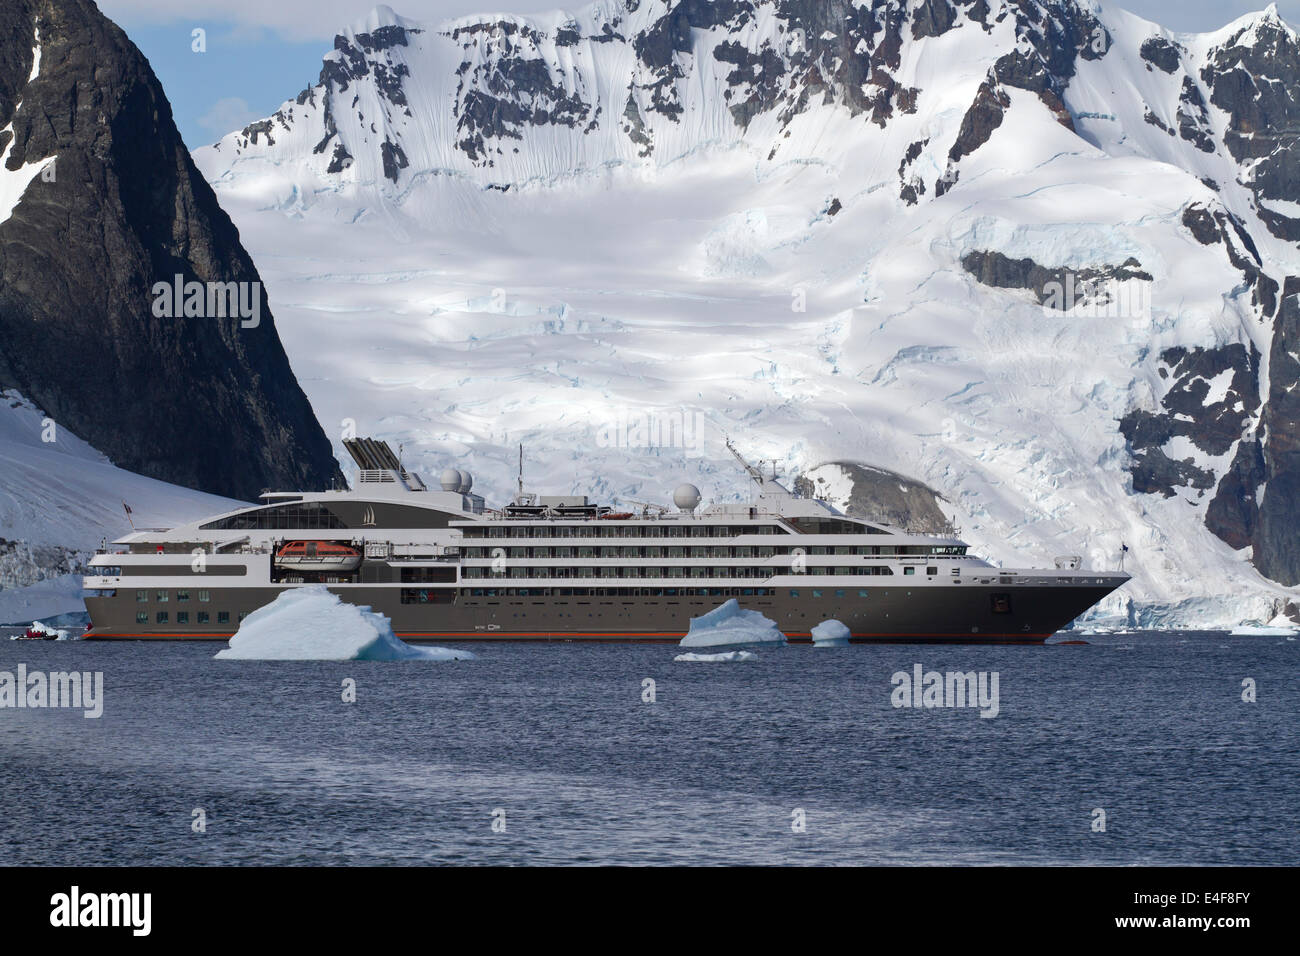 De tourisme navigation parmi les icebergs dans l'Antarctique sur un fond de montagnes Banque D'Images